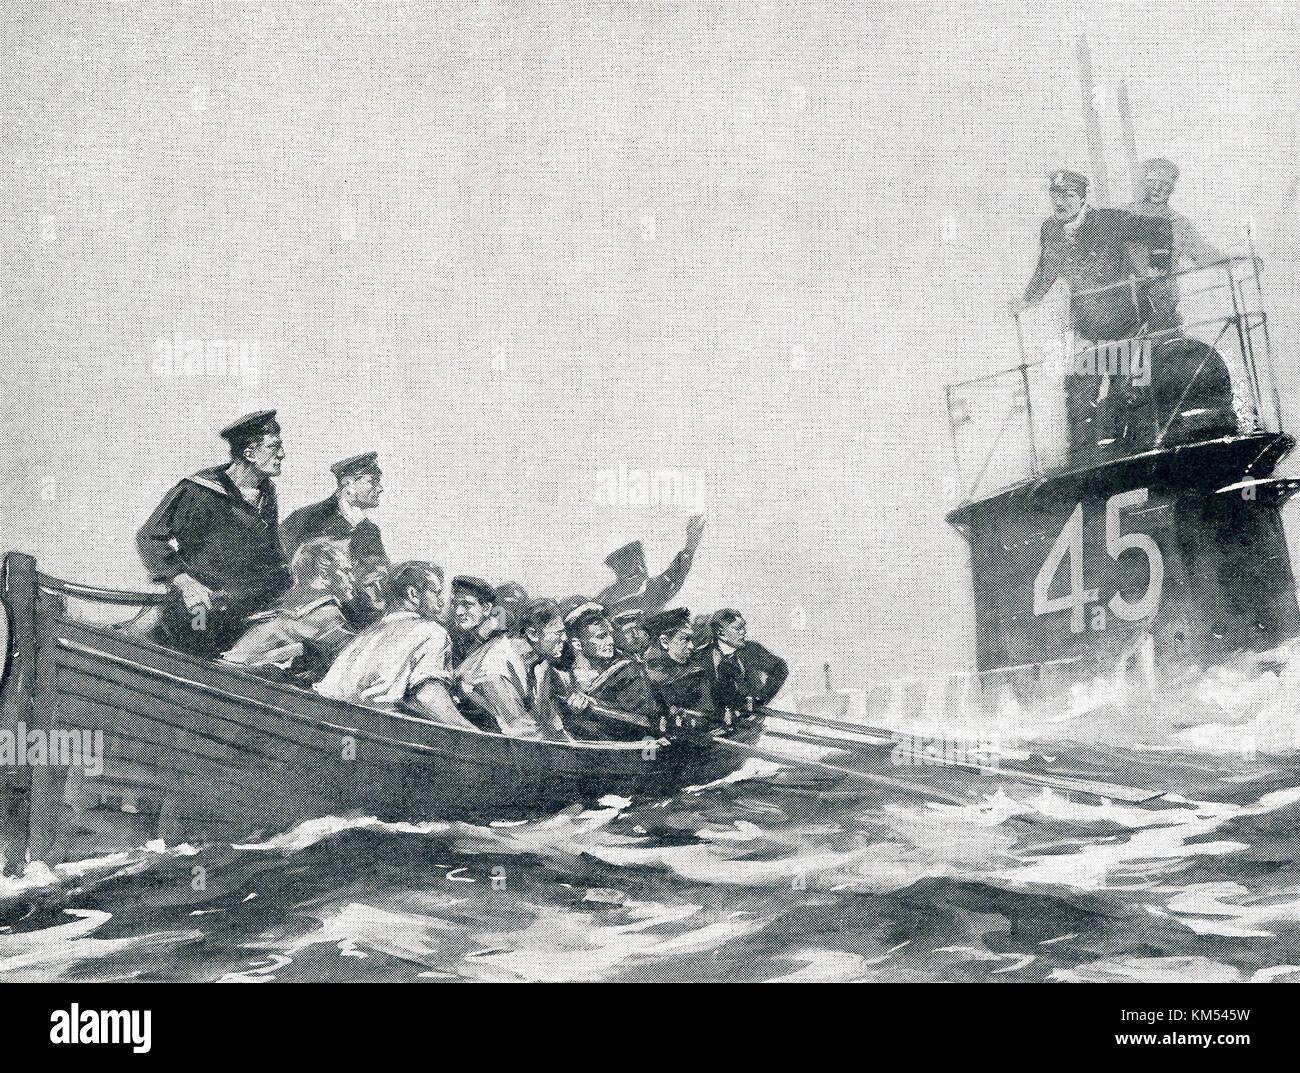 La légende de cette photo qui date d'environ 1916 se lit comme suit : marins britanniques, leur cruiser a coulé, sont pris en charge par l'un de leurs propres sous-marins. La photo capture une scène pendant la Première Guerre mondiale. Banque D'Images